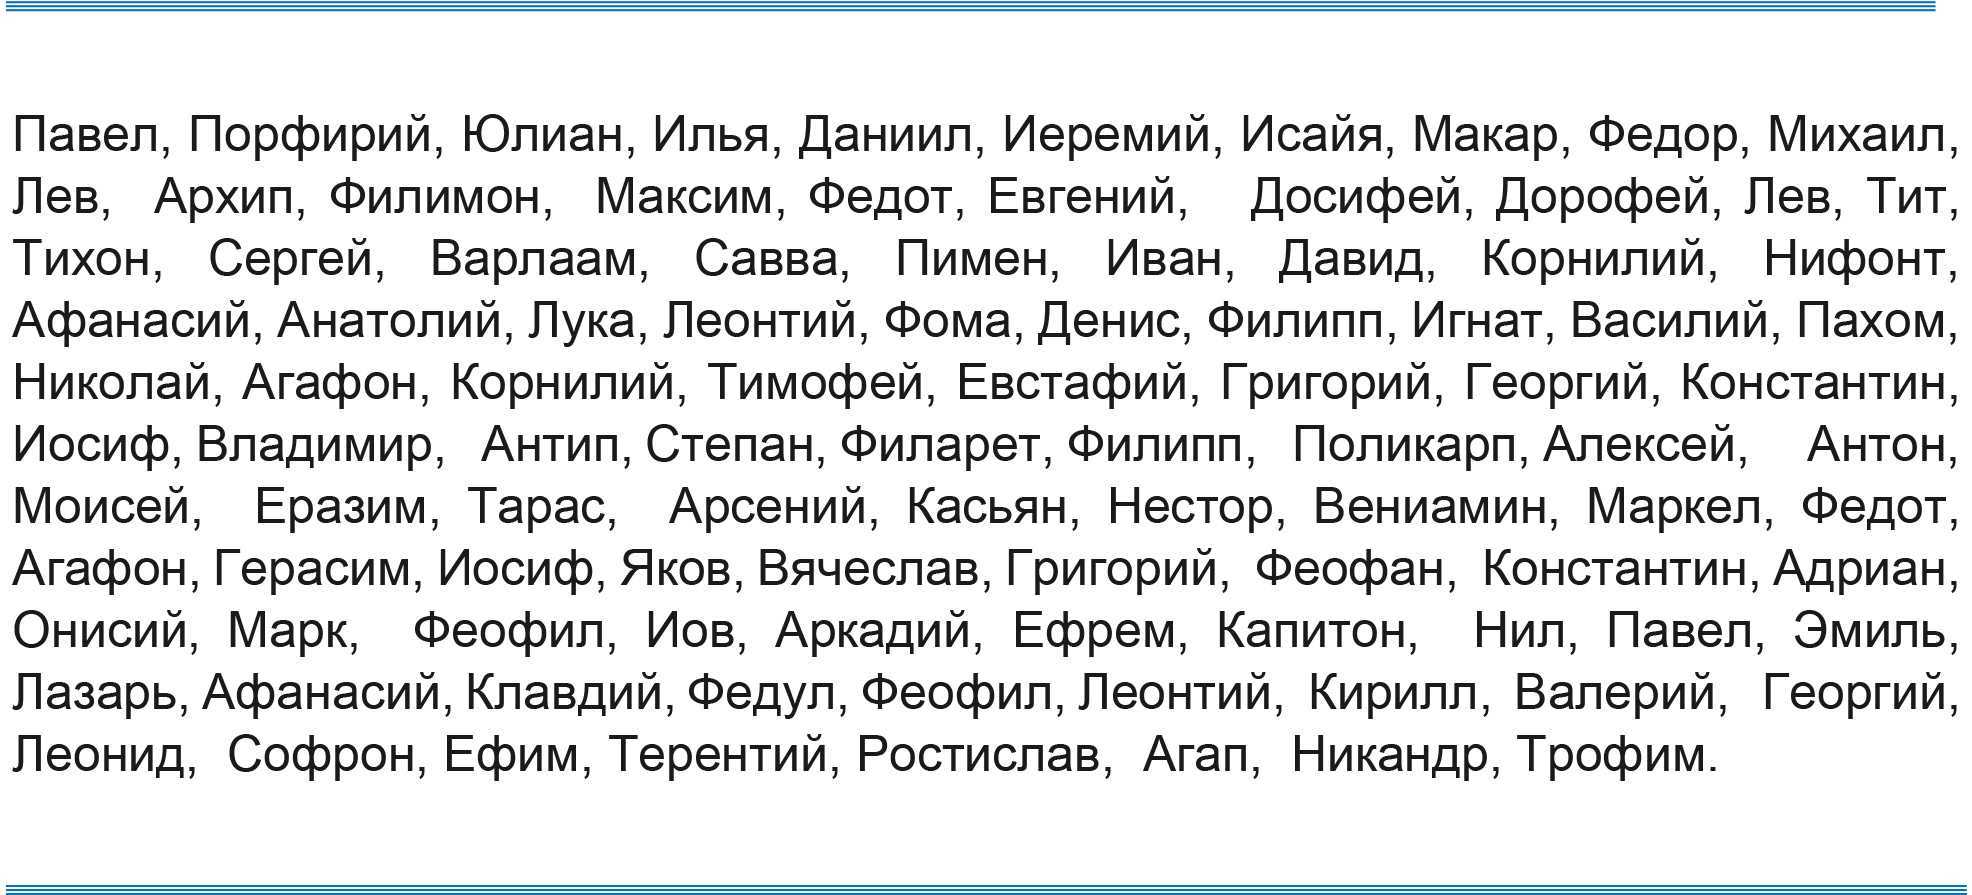 мужские имена к отчеству васильевич